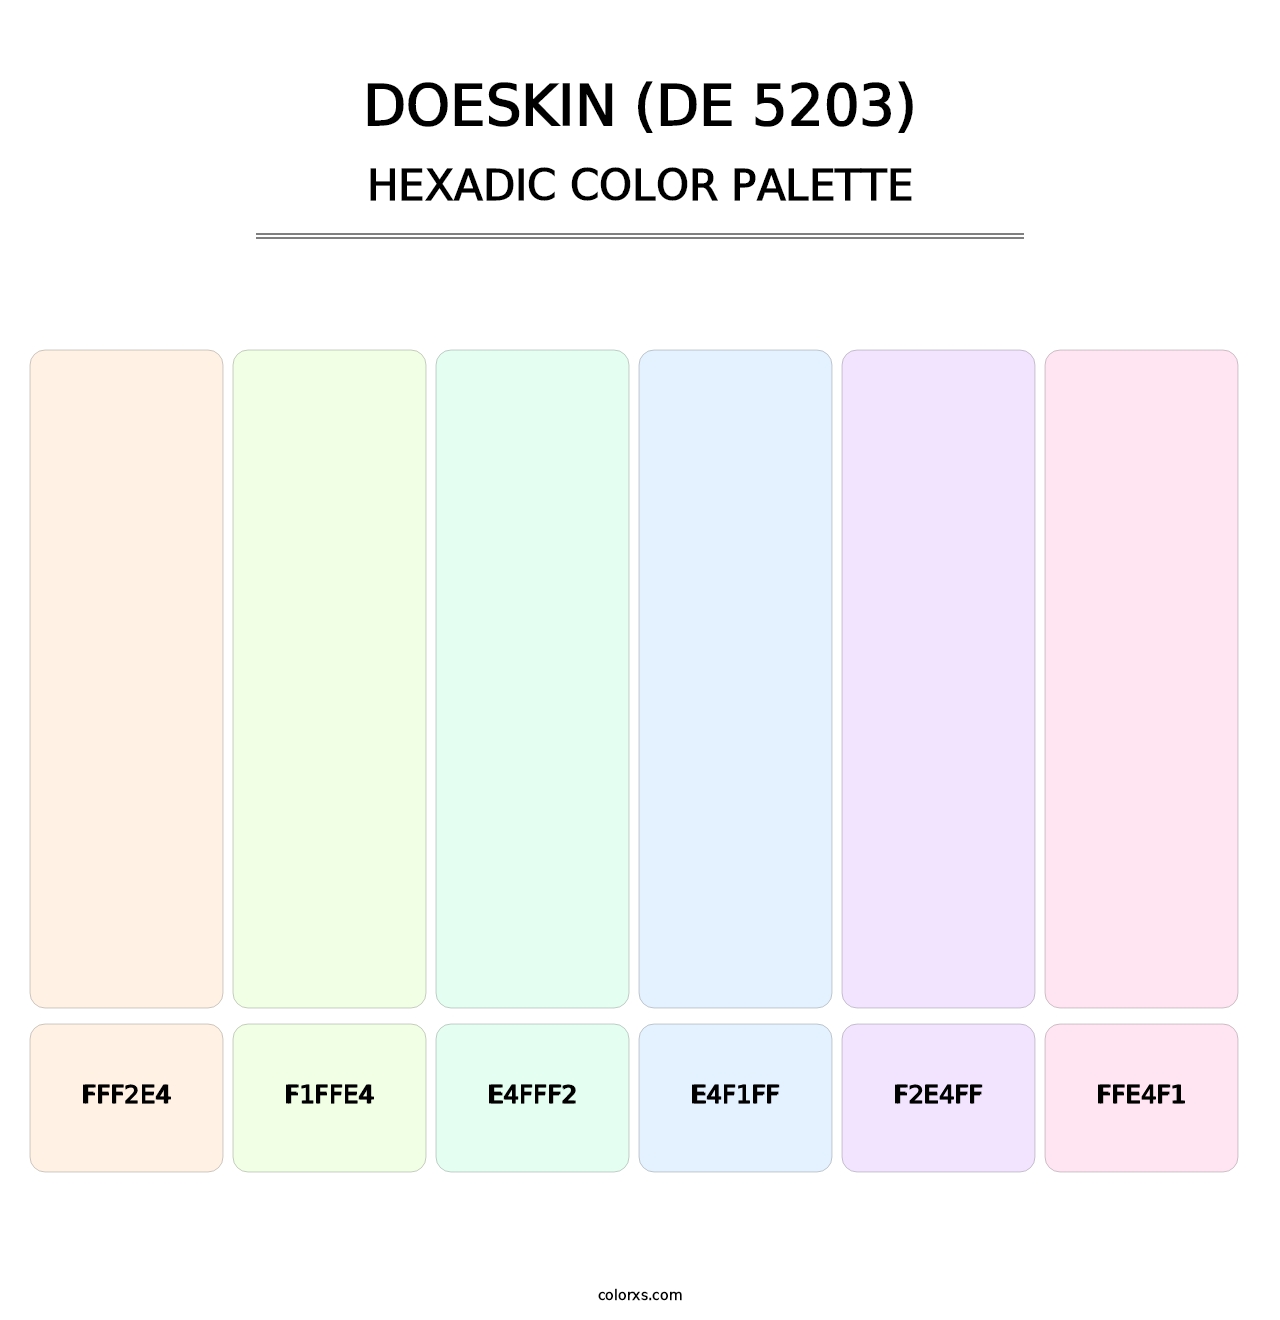 Doeskin (DE 5203) - Hexadic Color Palette